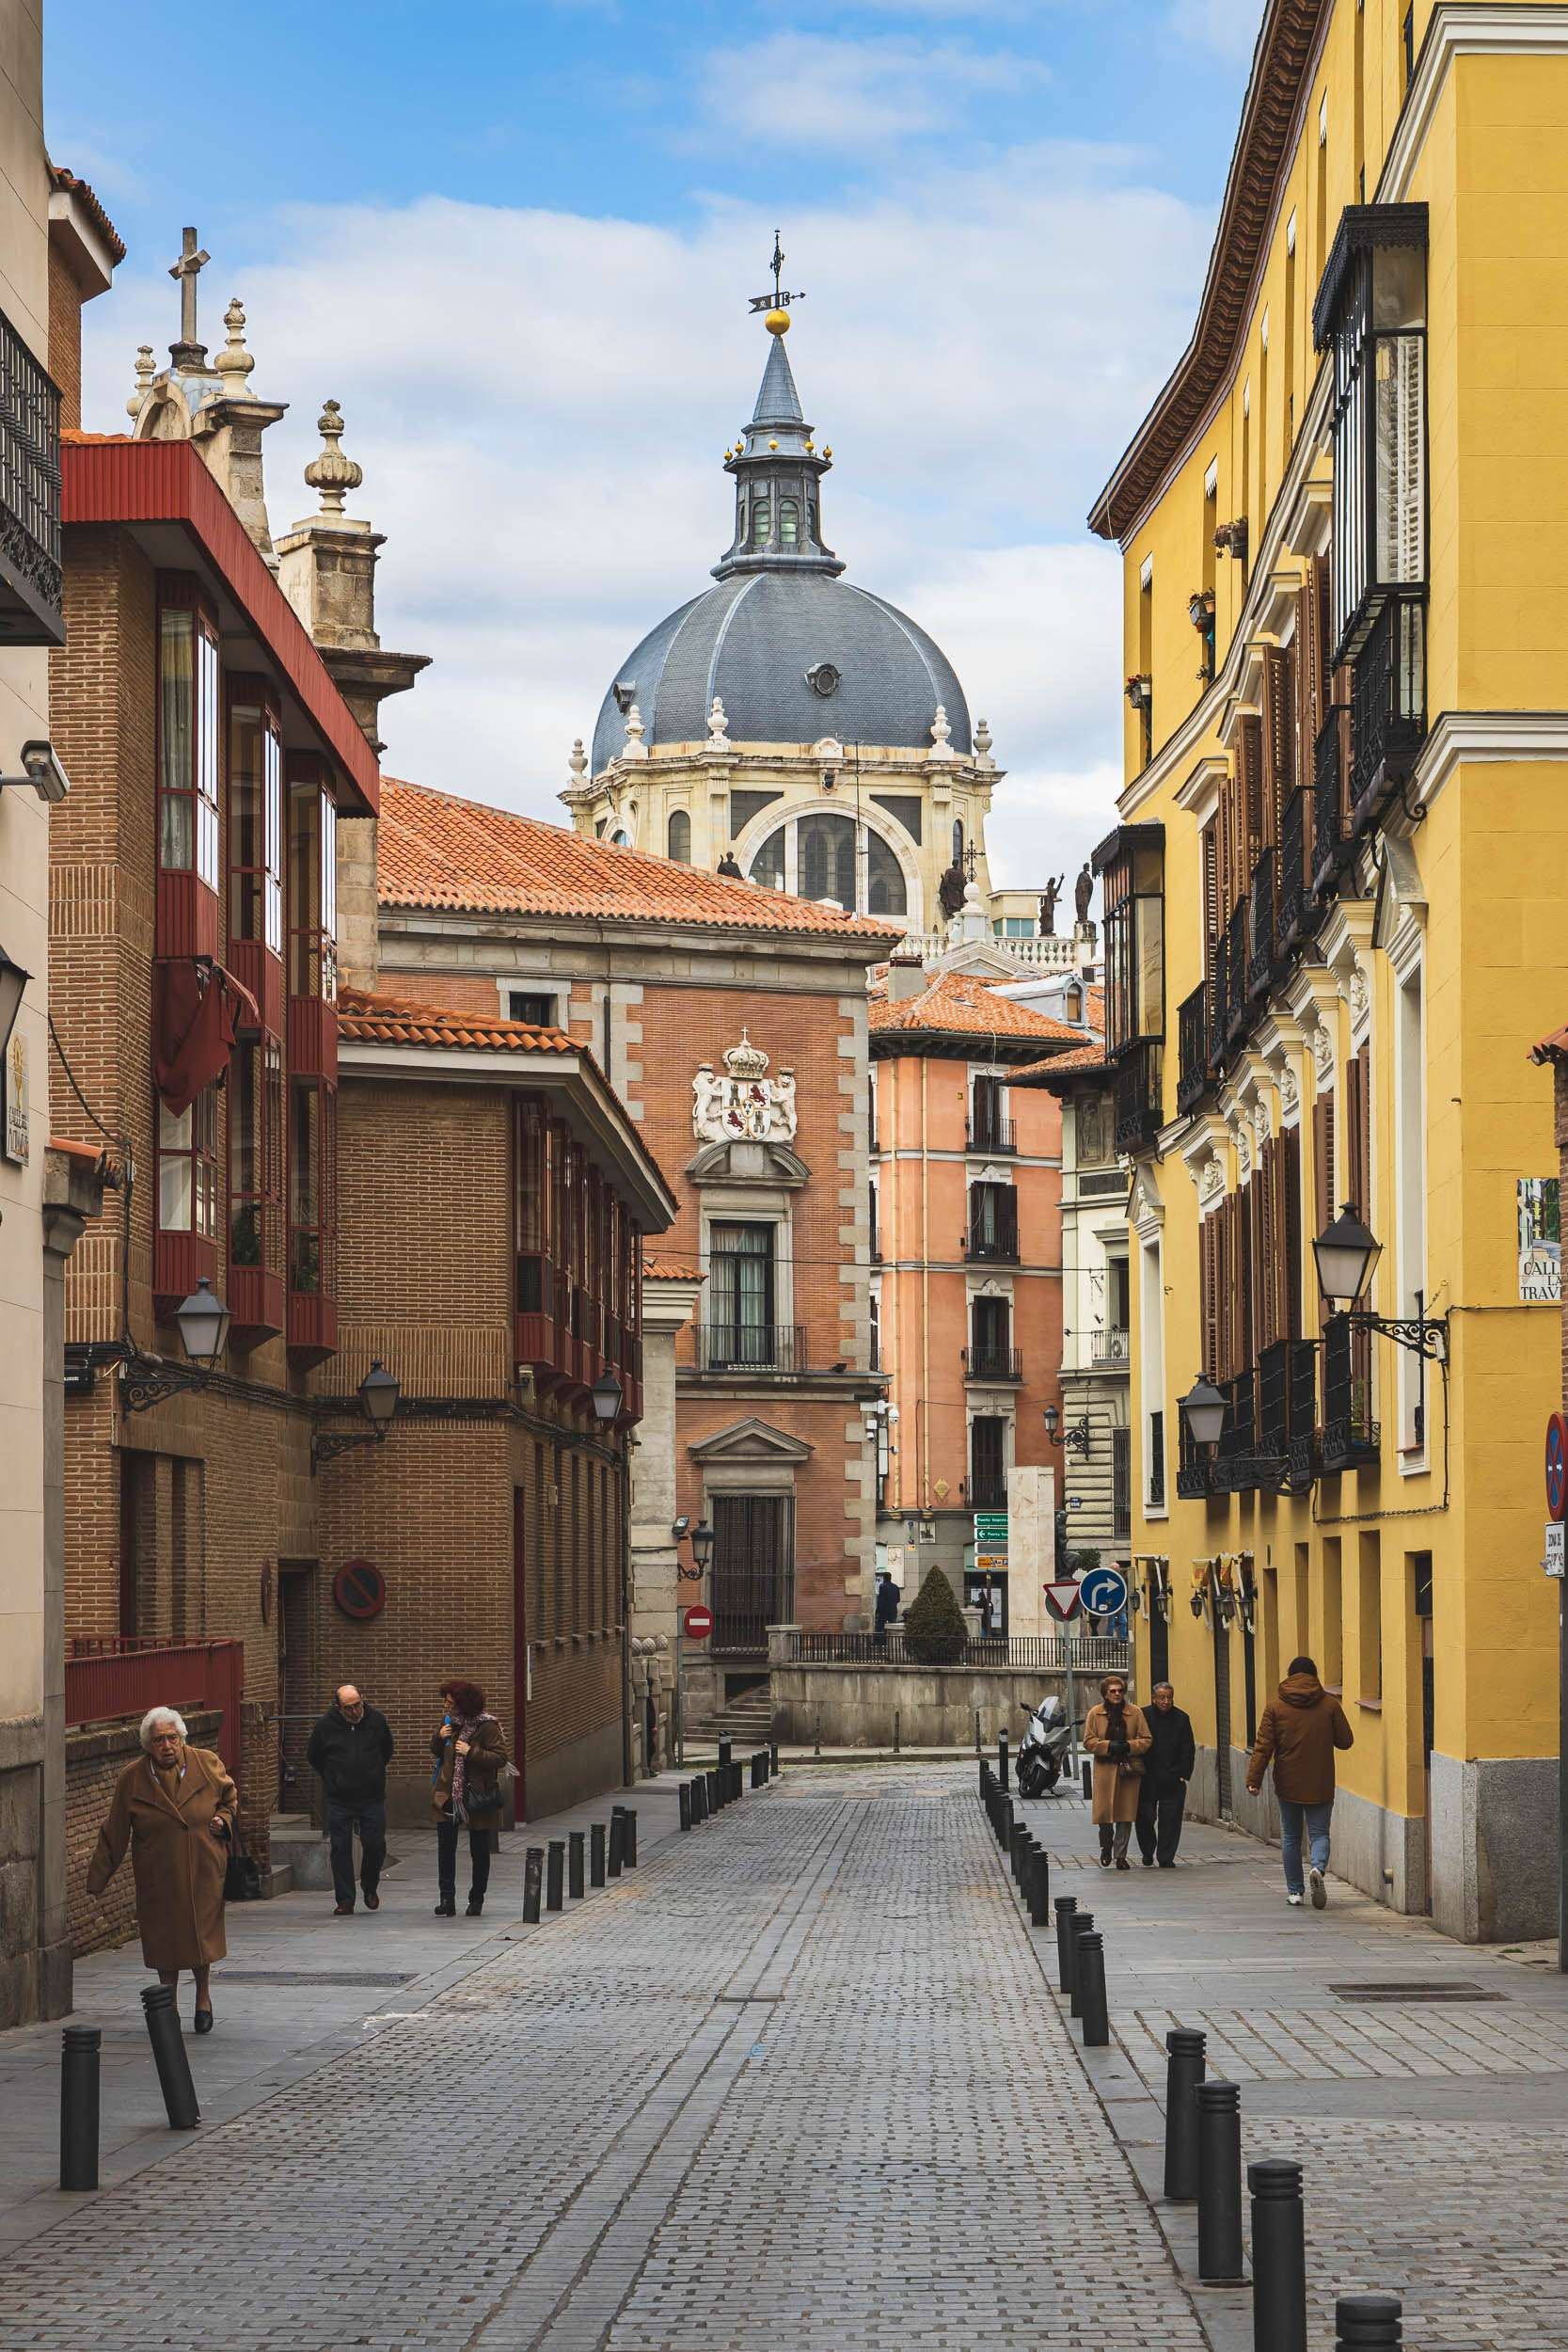 A street scene in Madrid, Spain